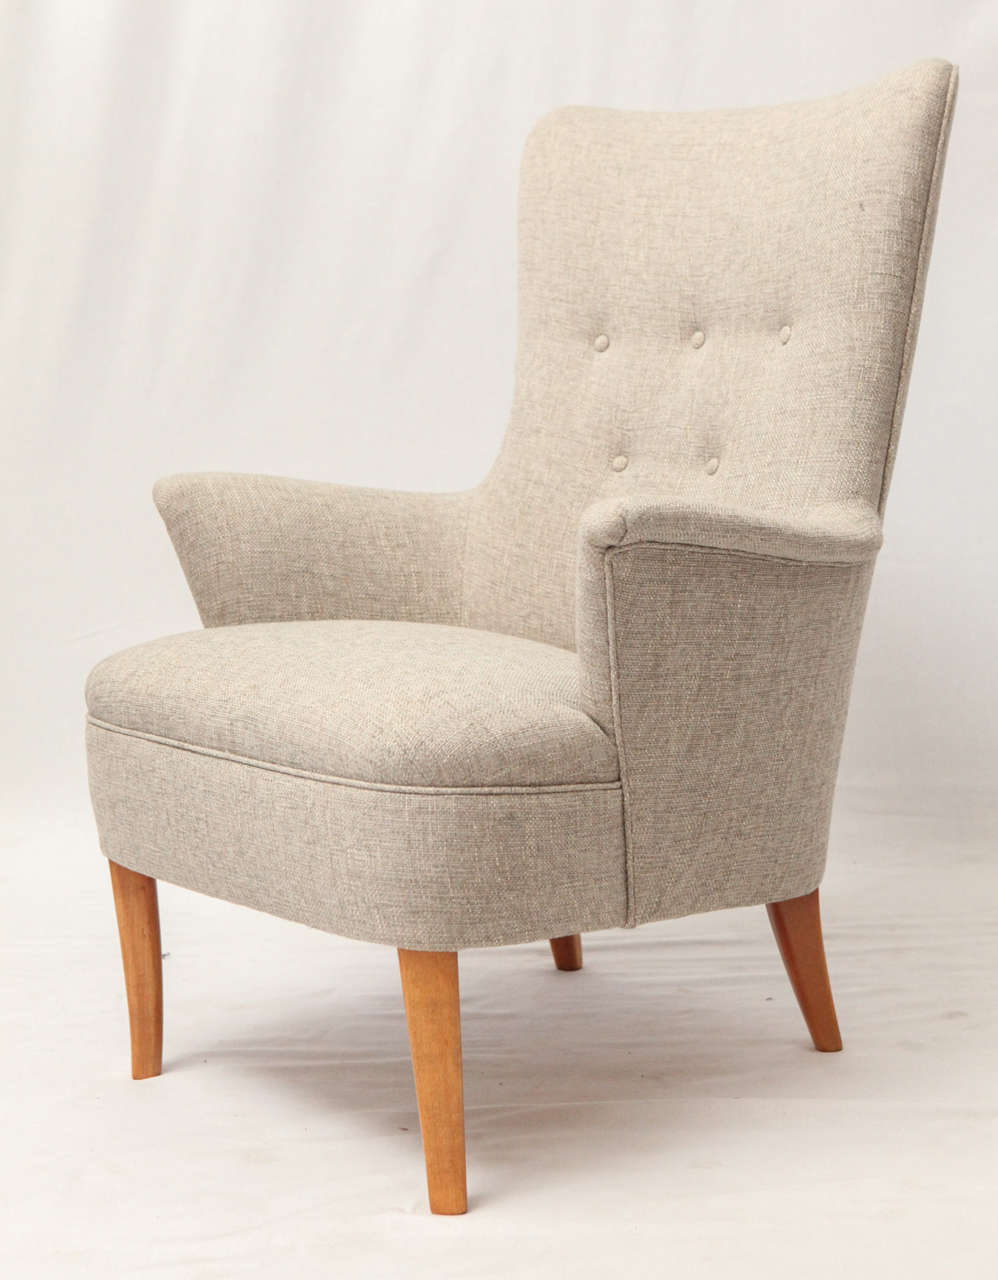 Carl Malmsten Lounge Chair Produced By OH Sjogren